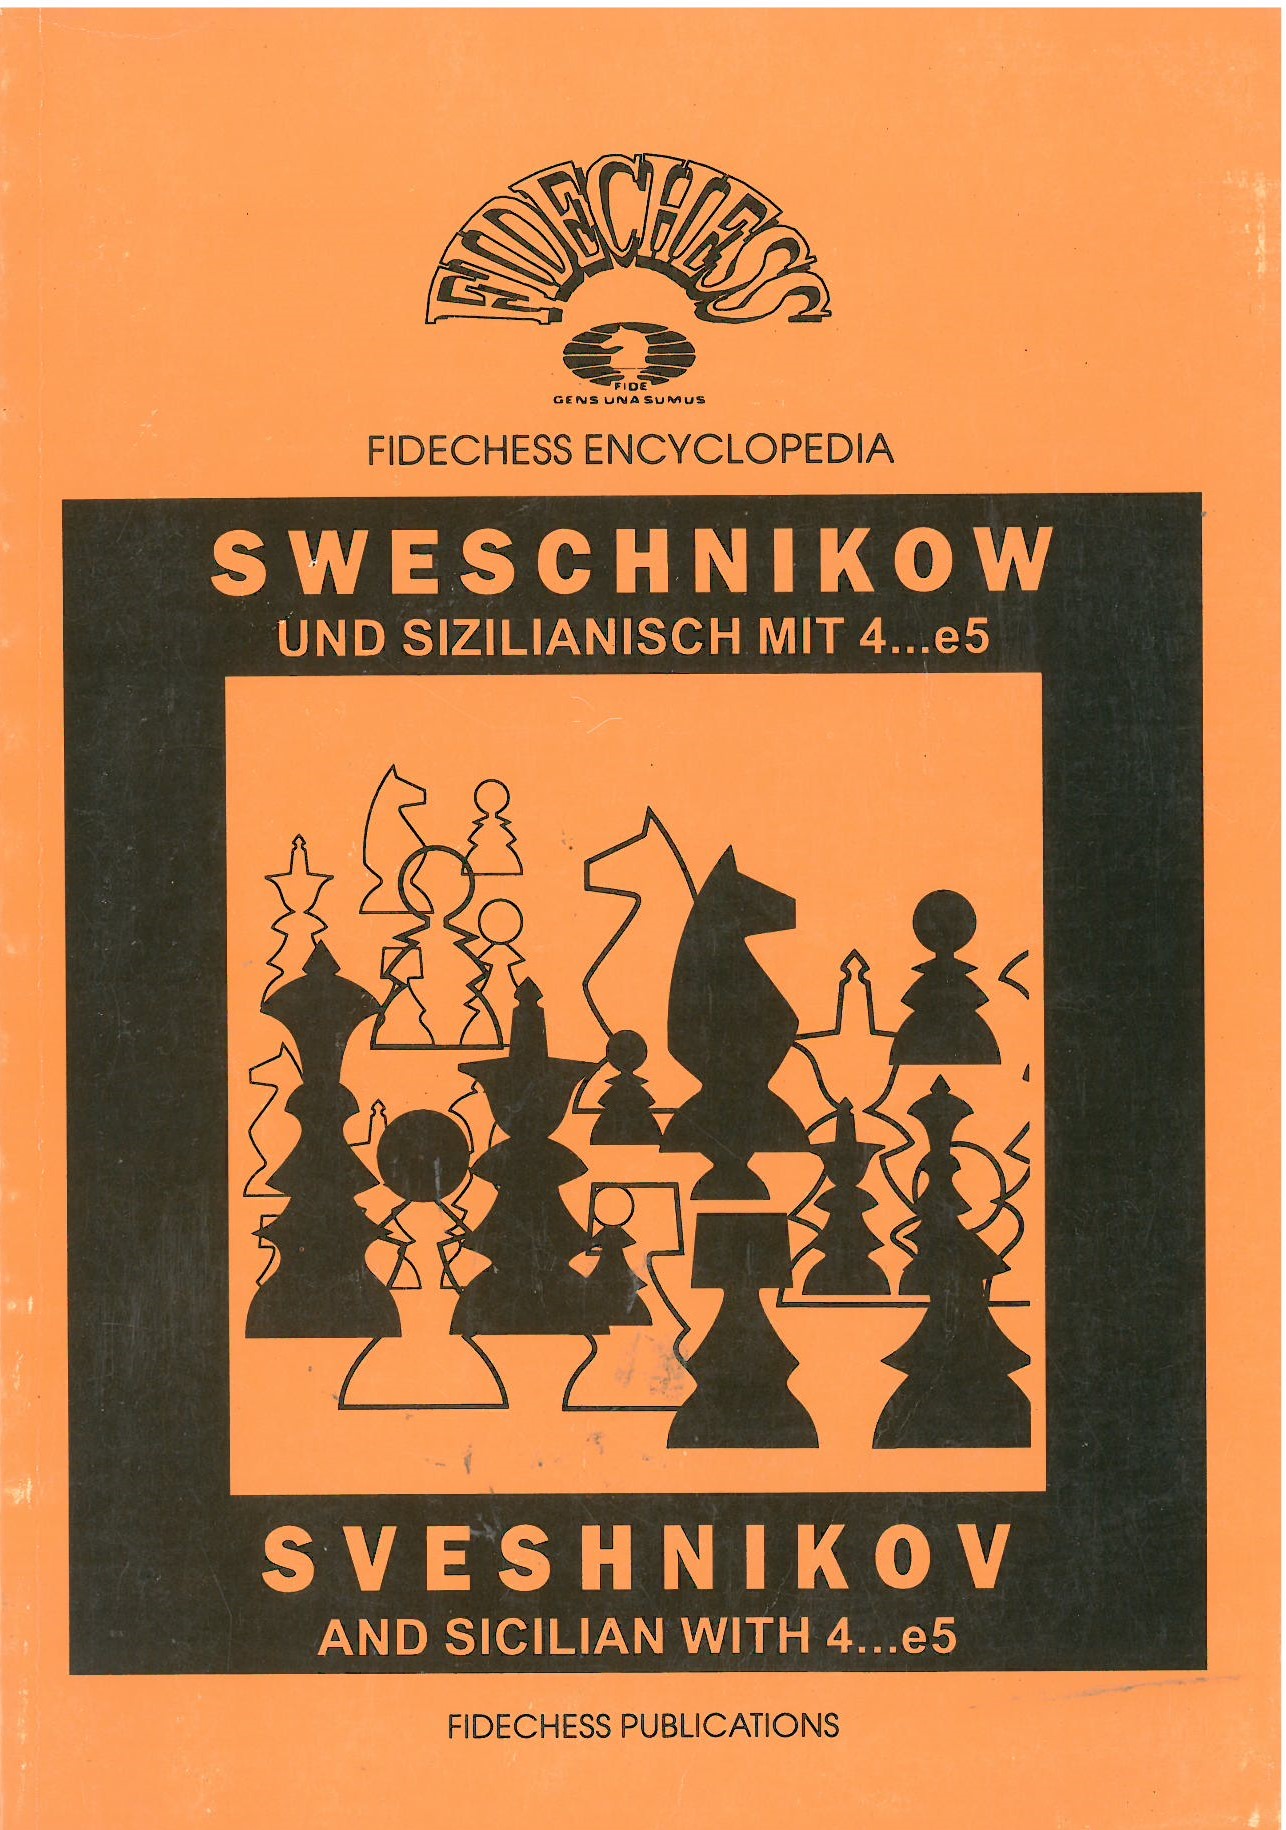 Fidechess Encyclopedia: Sweshnikow und Sizilianisch mit 4...e5 B32-B33